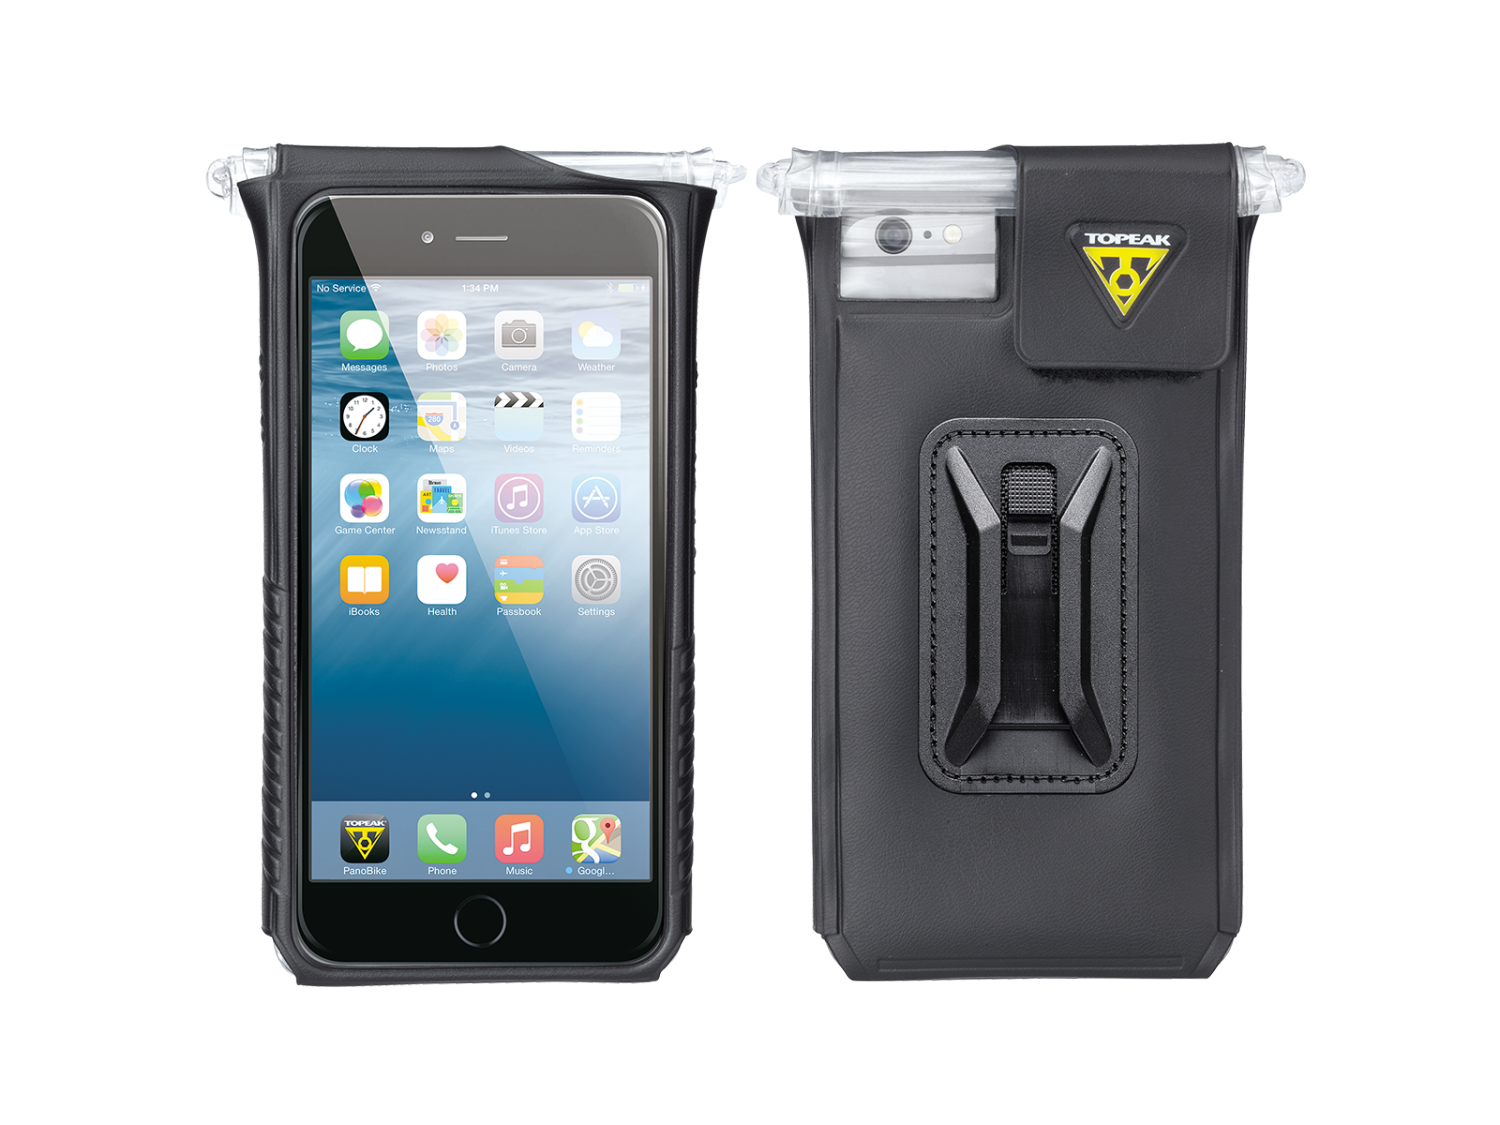 Держатель телефона велосипедный TOPEAK SmartPhone DryBag, для iPhone 6 Plus/6s Plus/7 Plus/8Plus, TT9842B держатель телефона с беспроводной зарядкой самозажимной захват 6 9 5 см